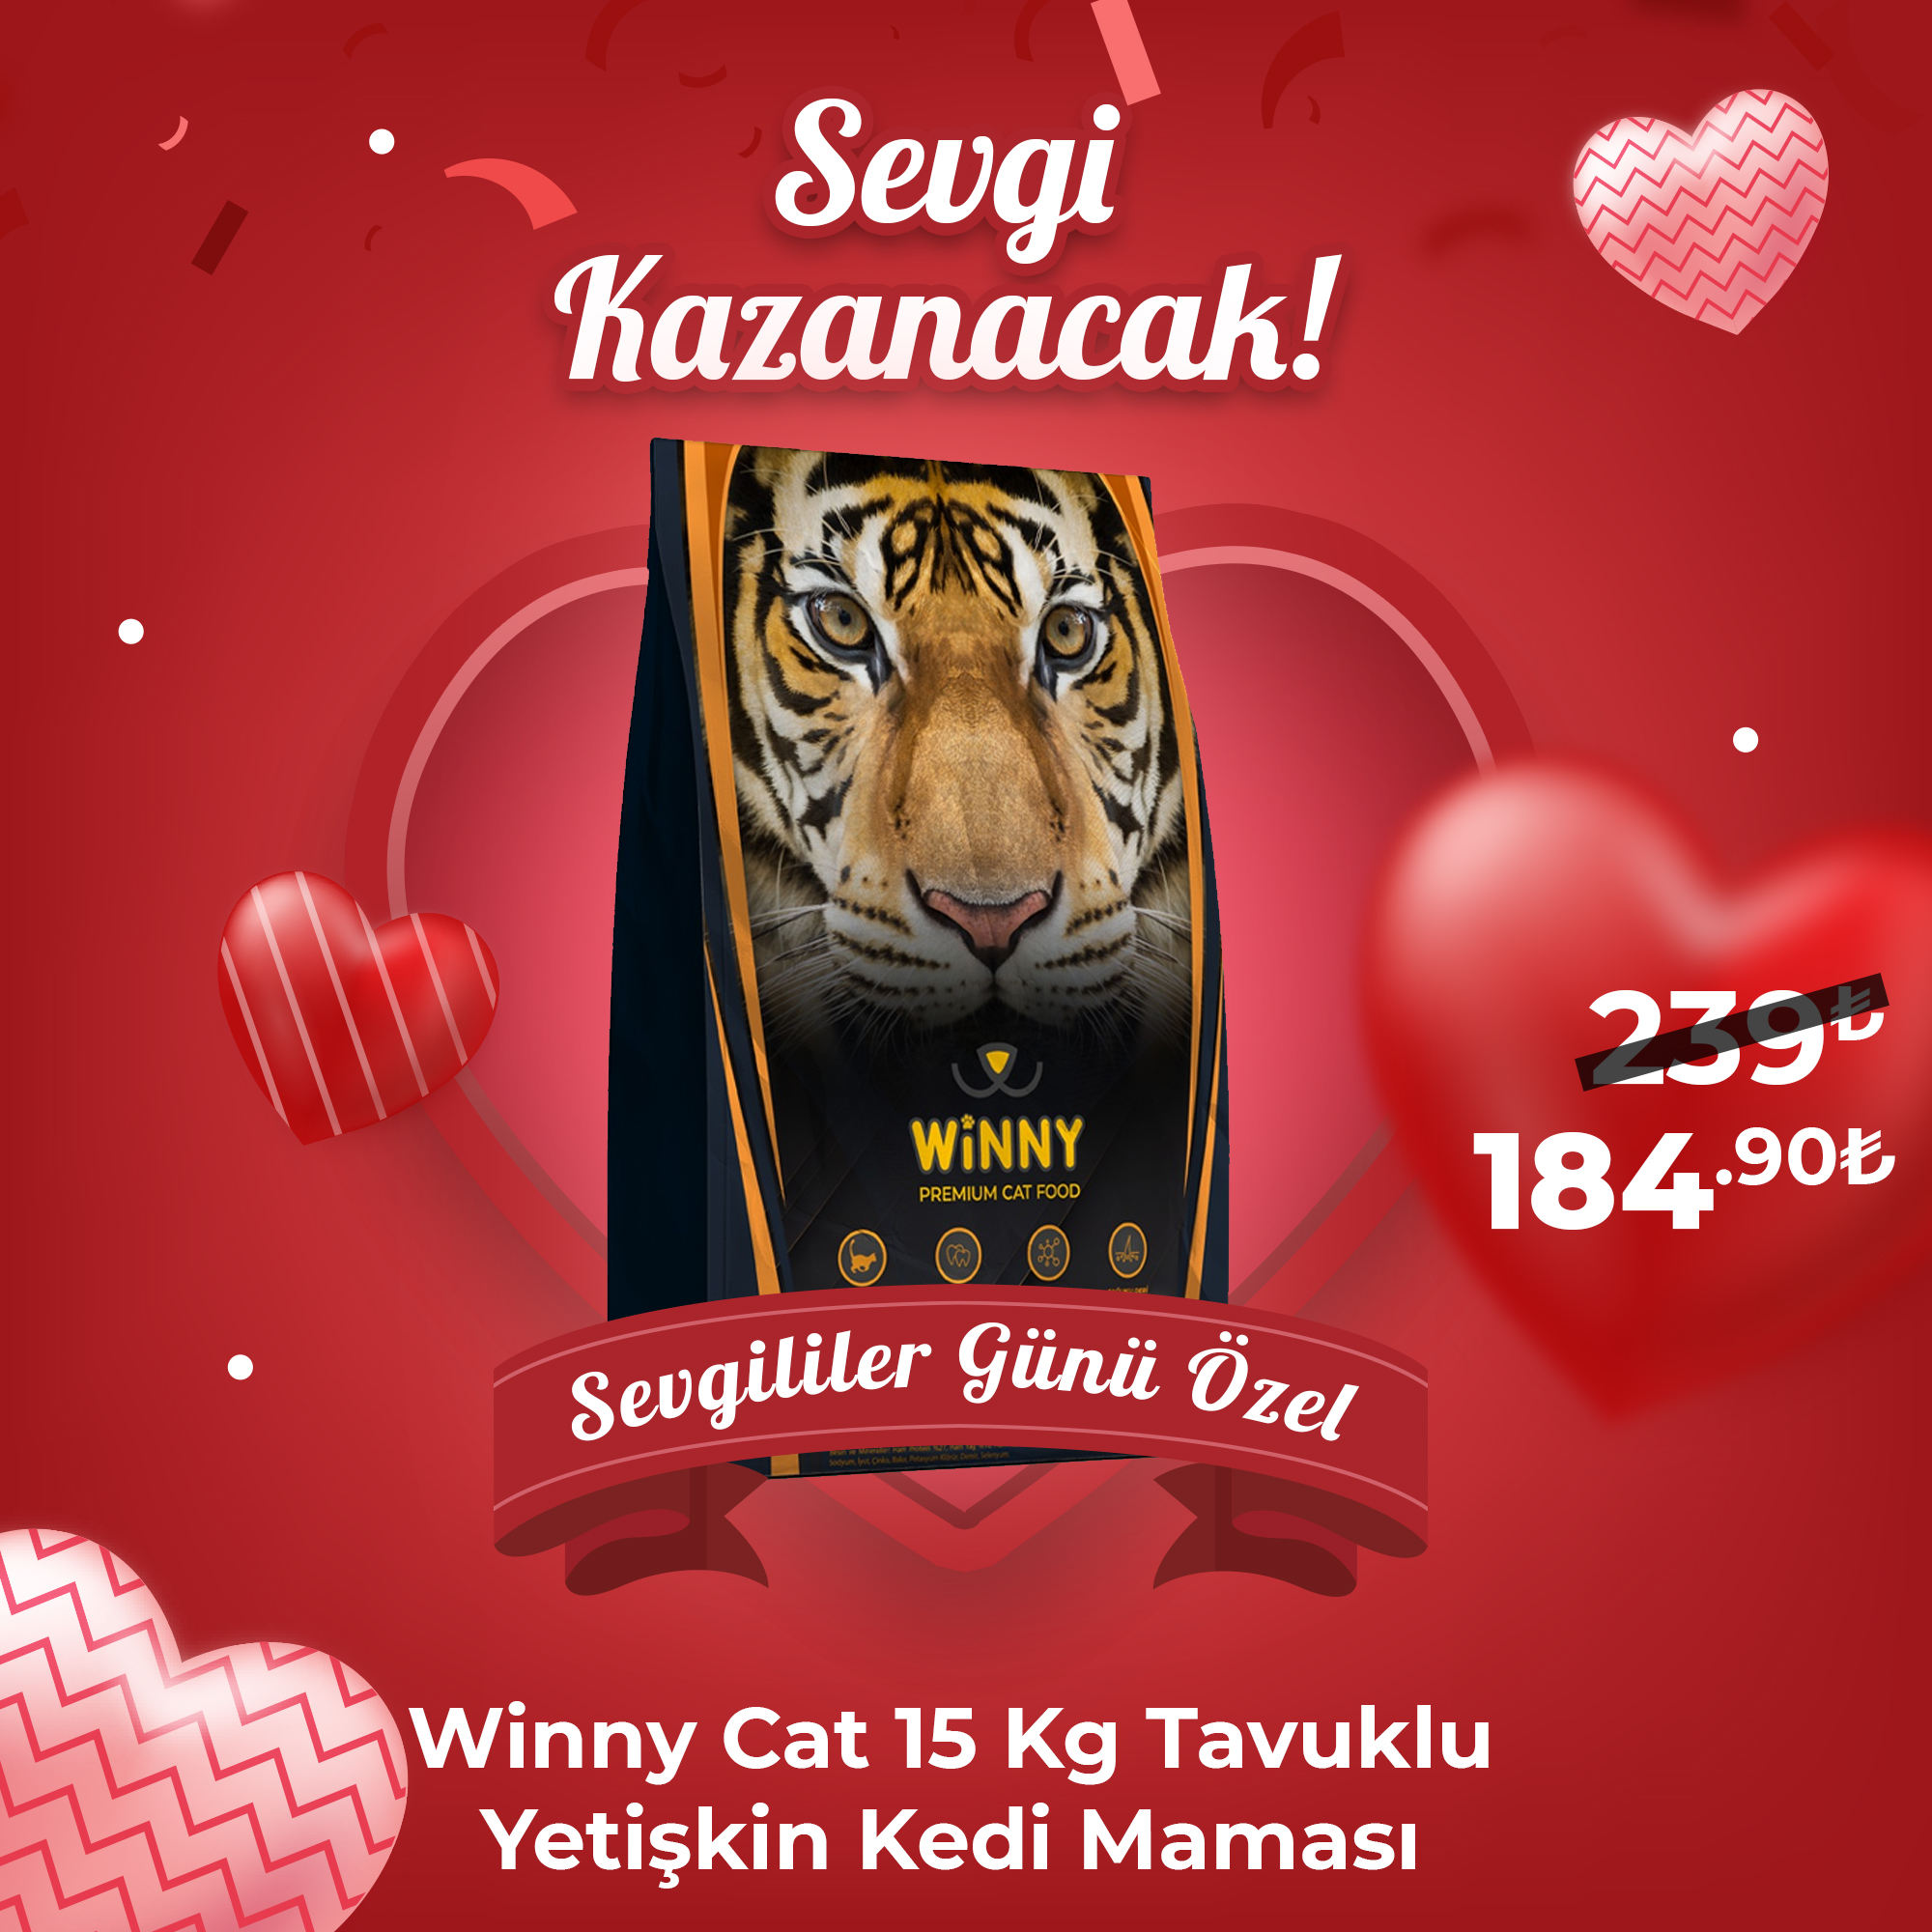 Winny Premium Cat Tavuklu 15 Kg Yetişkin Kedi Maması